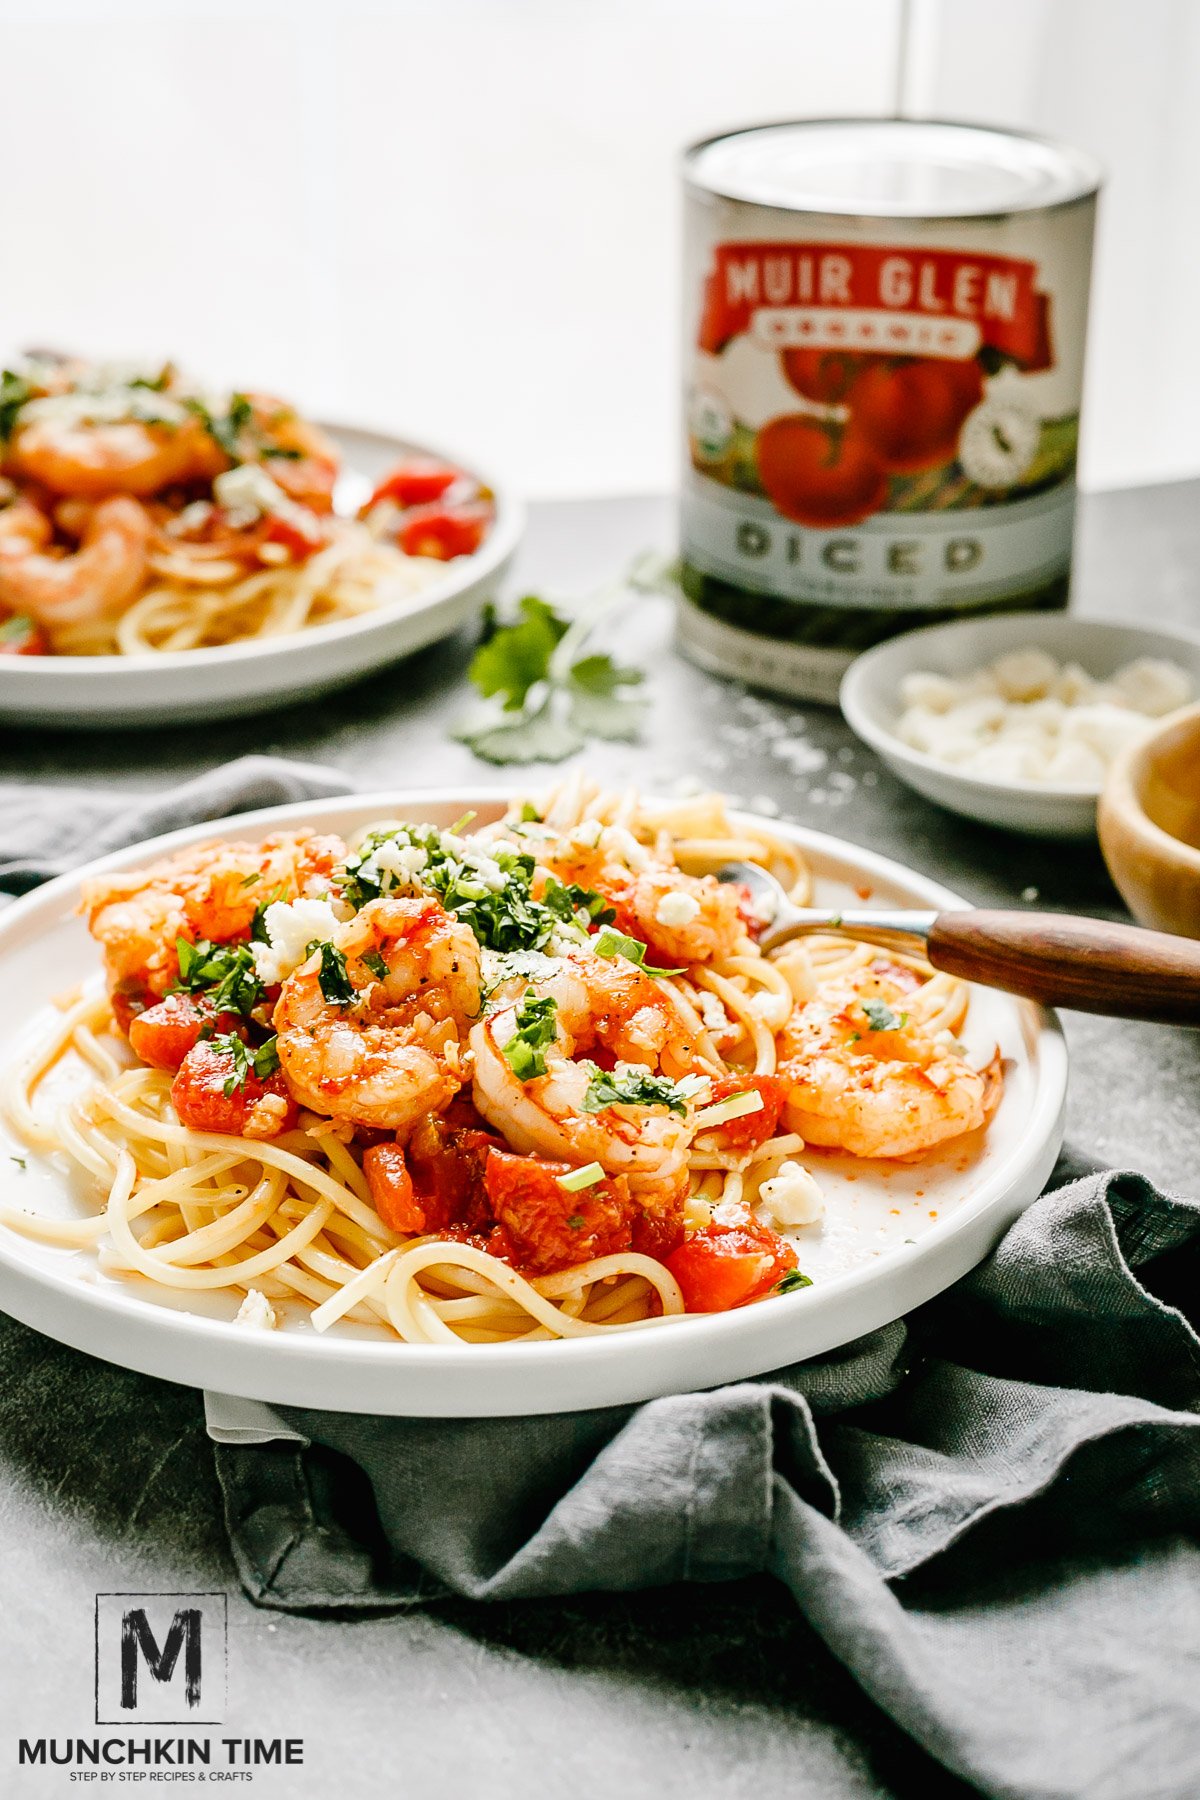 Super Delicious Italian Shrimp Tomato Pasta Recipe with feta cheese and cilantro greens.